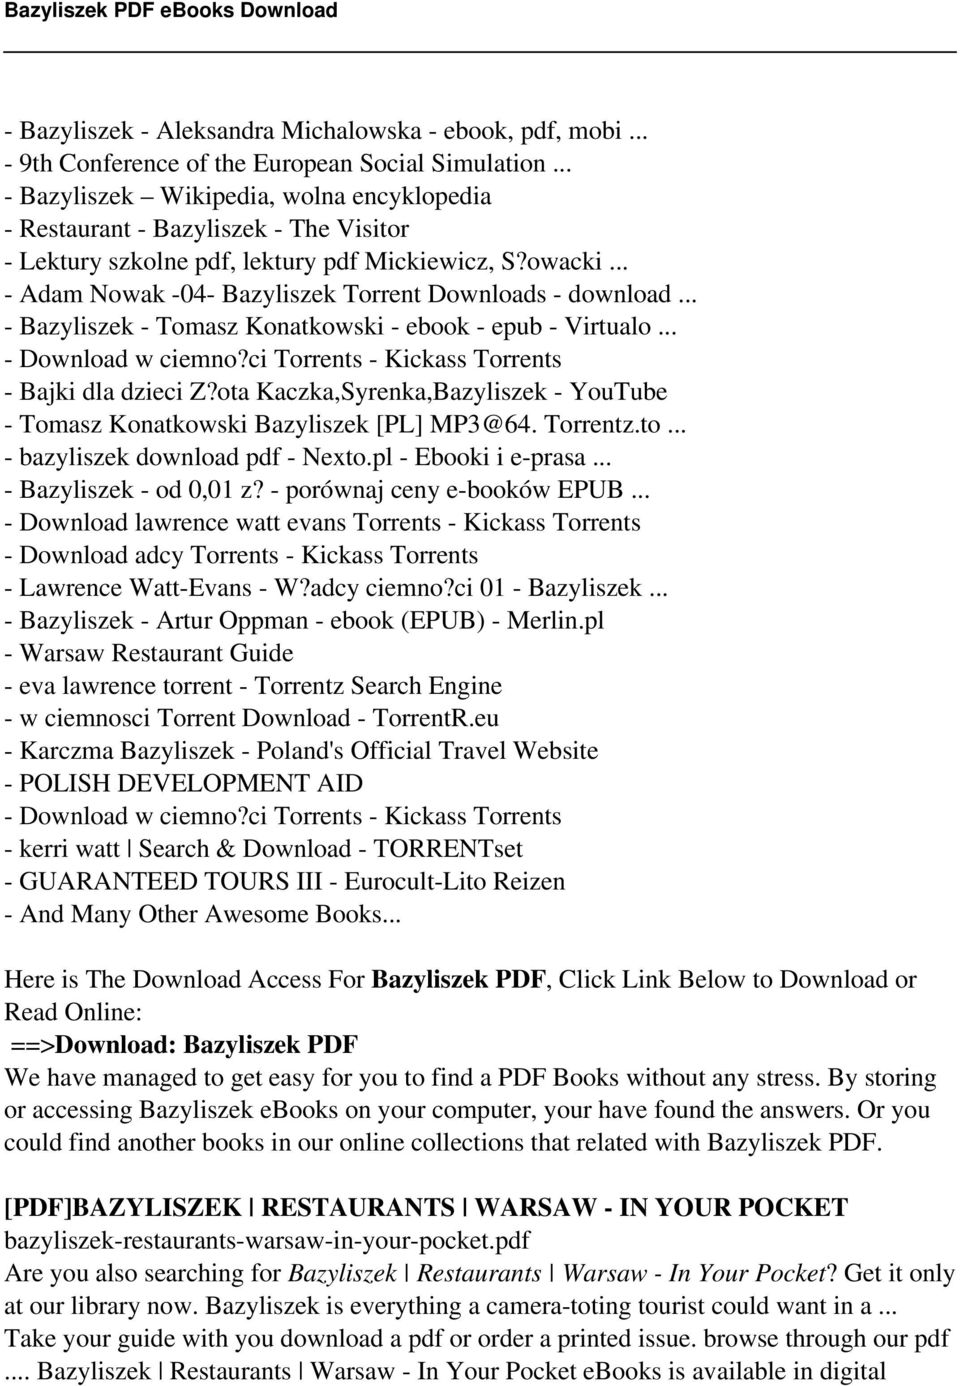 .. - Adam Nowak -04- Bazyliszek Torrent Downloads - download... - Bazyliszek - Tomasz Konatkowski - ebook - epub - Virtualo... - Download w ciemno?ci Torrents - Kickass Torrents - Bajki dla dzieci Z?